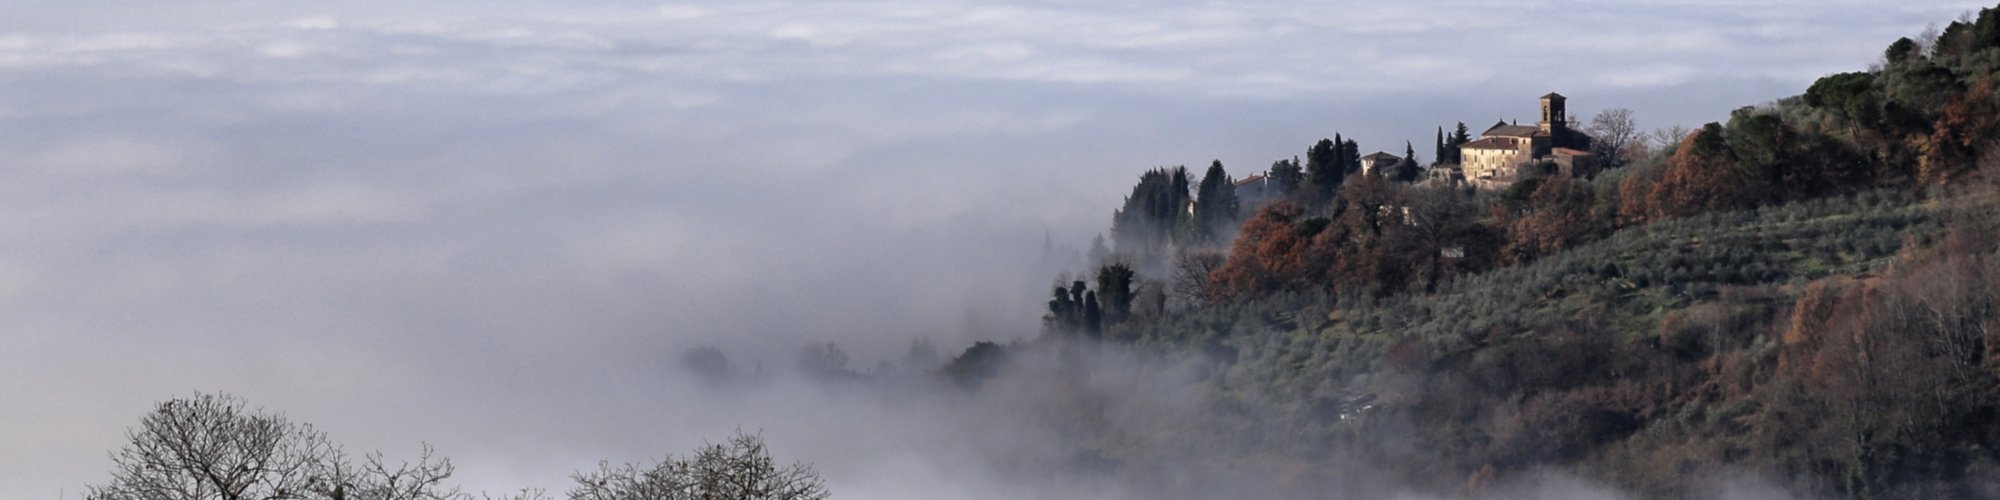 Panorama von Ronta im Nebel